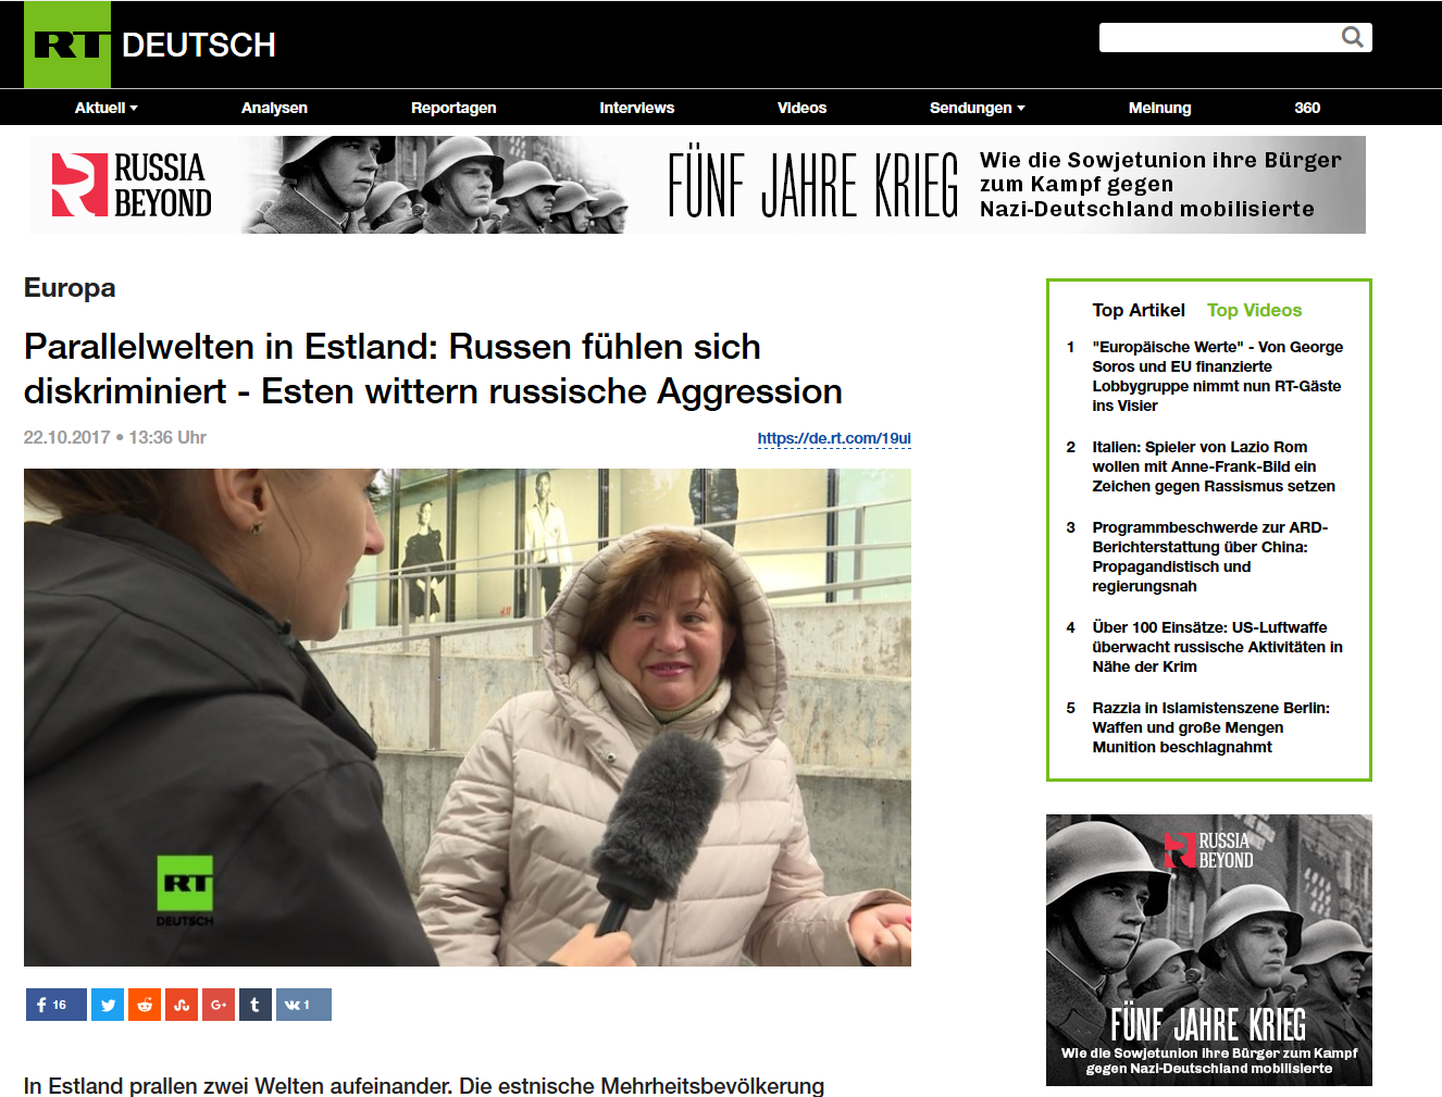 Немецкоязычный репортаж RT «Параллельные миры в Эстонии: русские ощущают, что их дискриминируют, – эстонцы предчувствуют российскую агрессию».